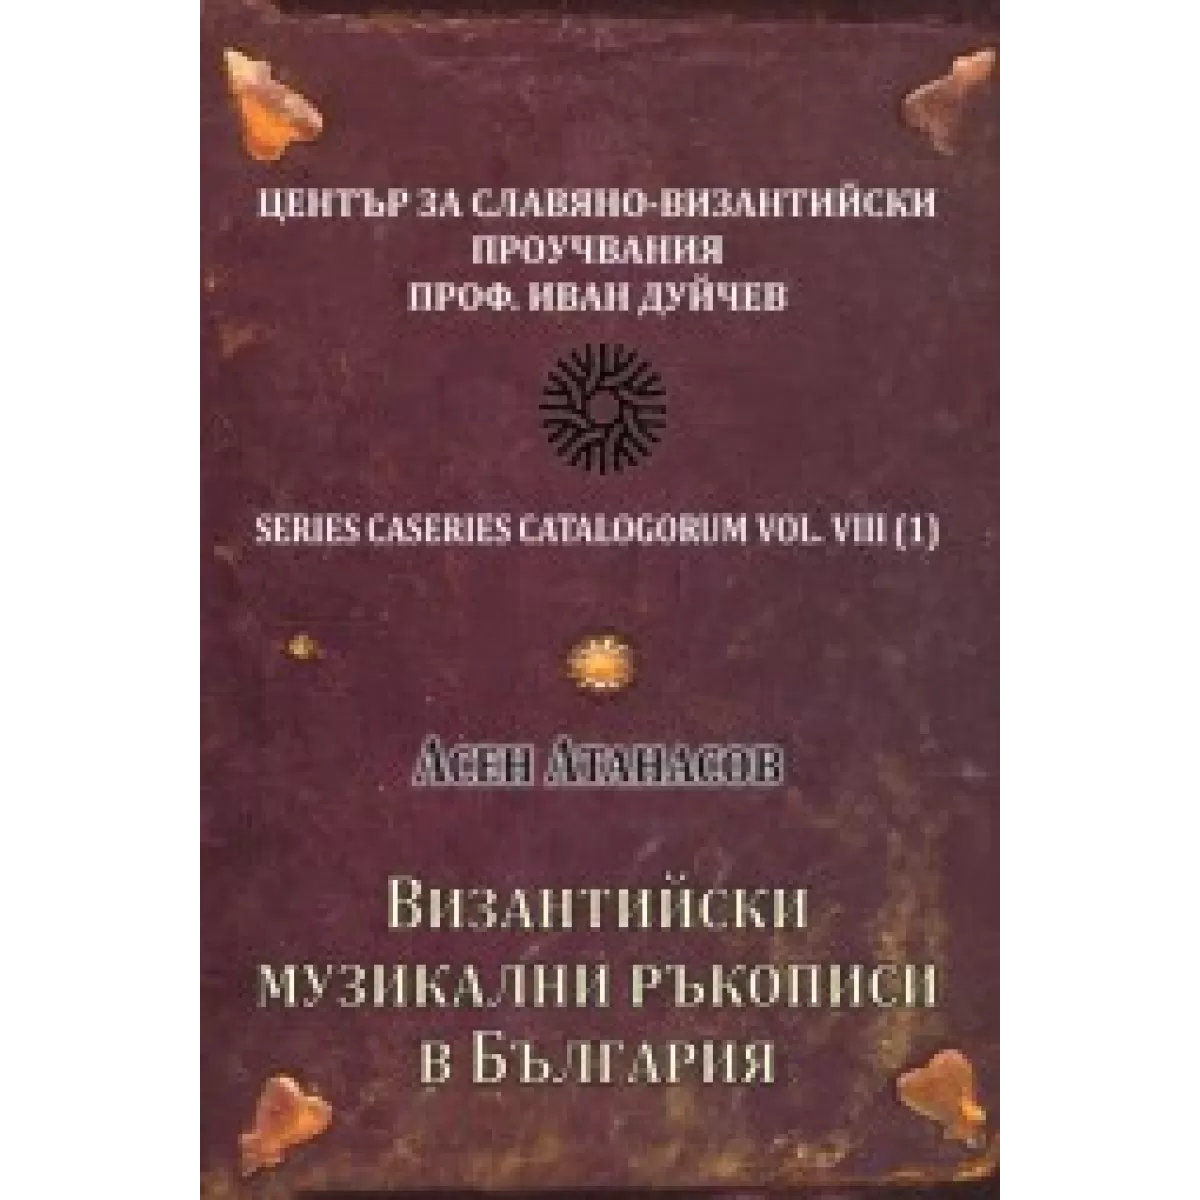 Византийски музикални ръкописи в България - CD